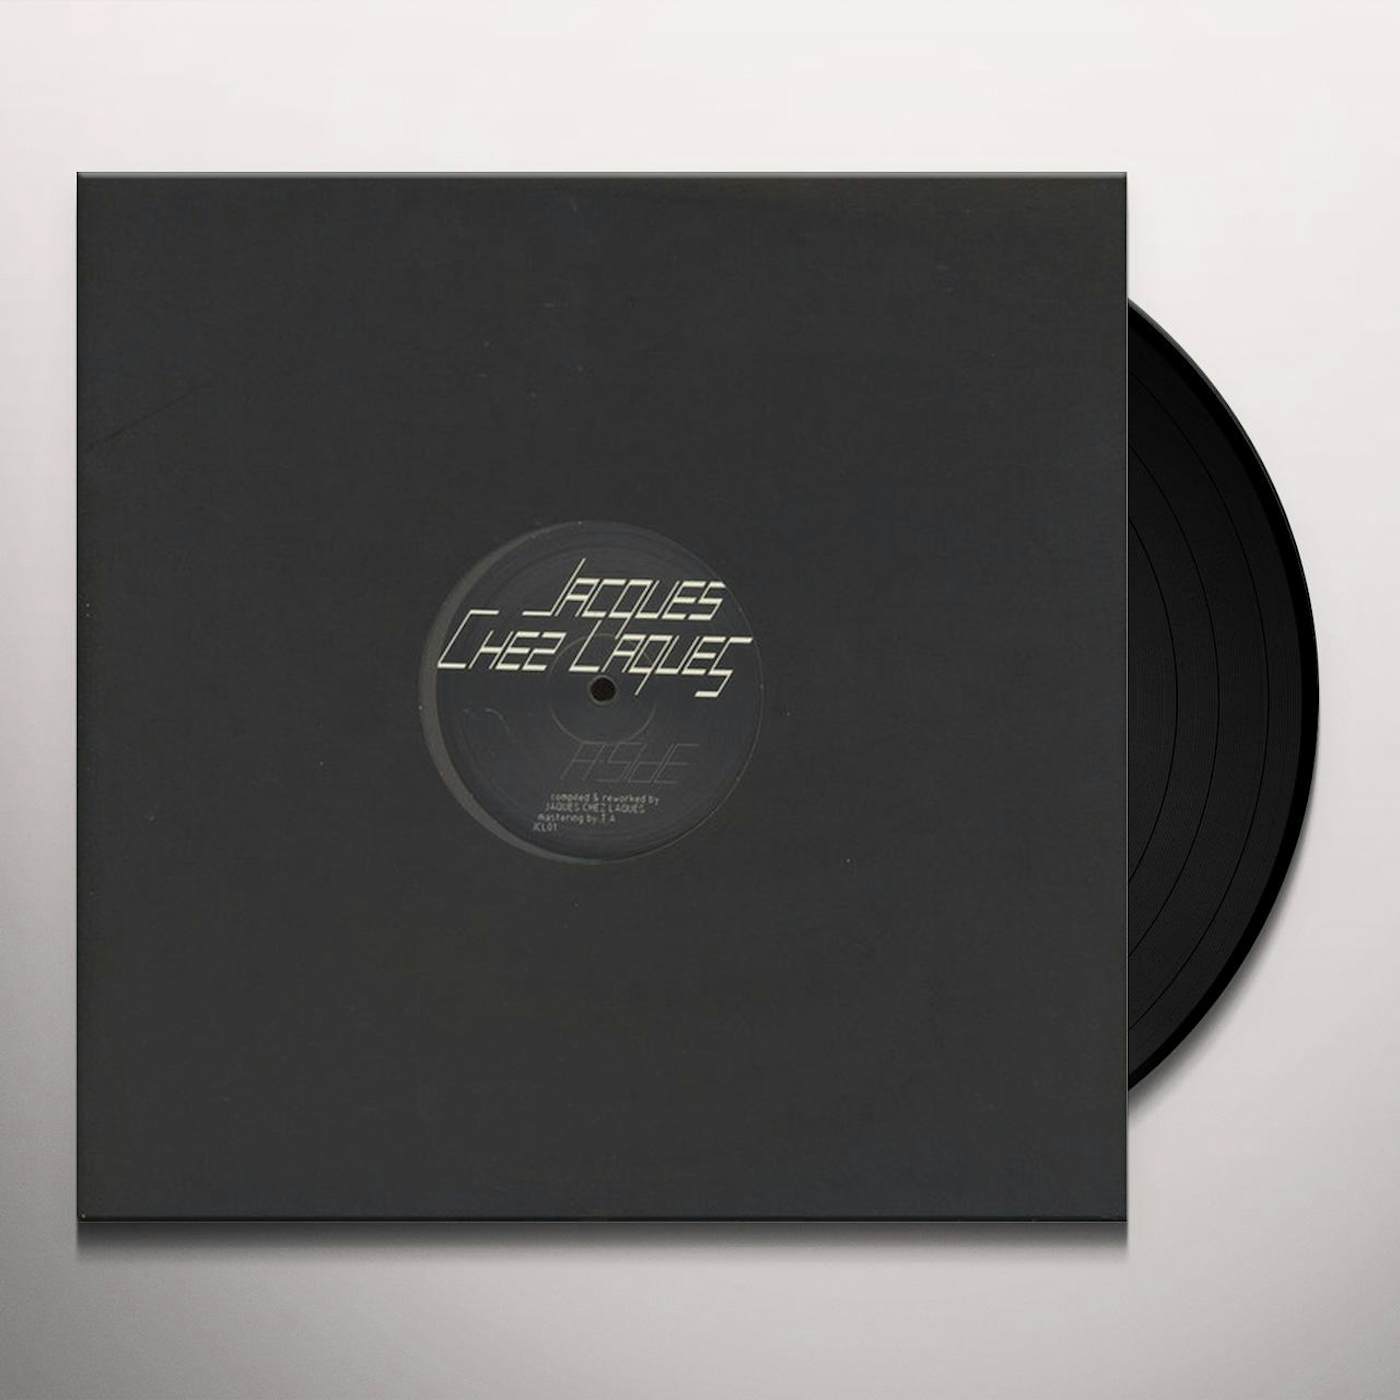 JAQUES CHEZ LAQUES Vinyl Record